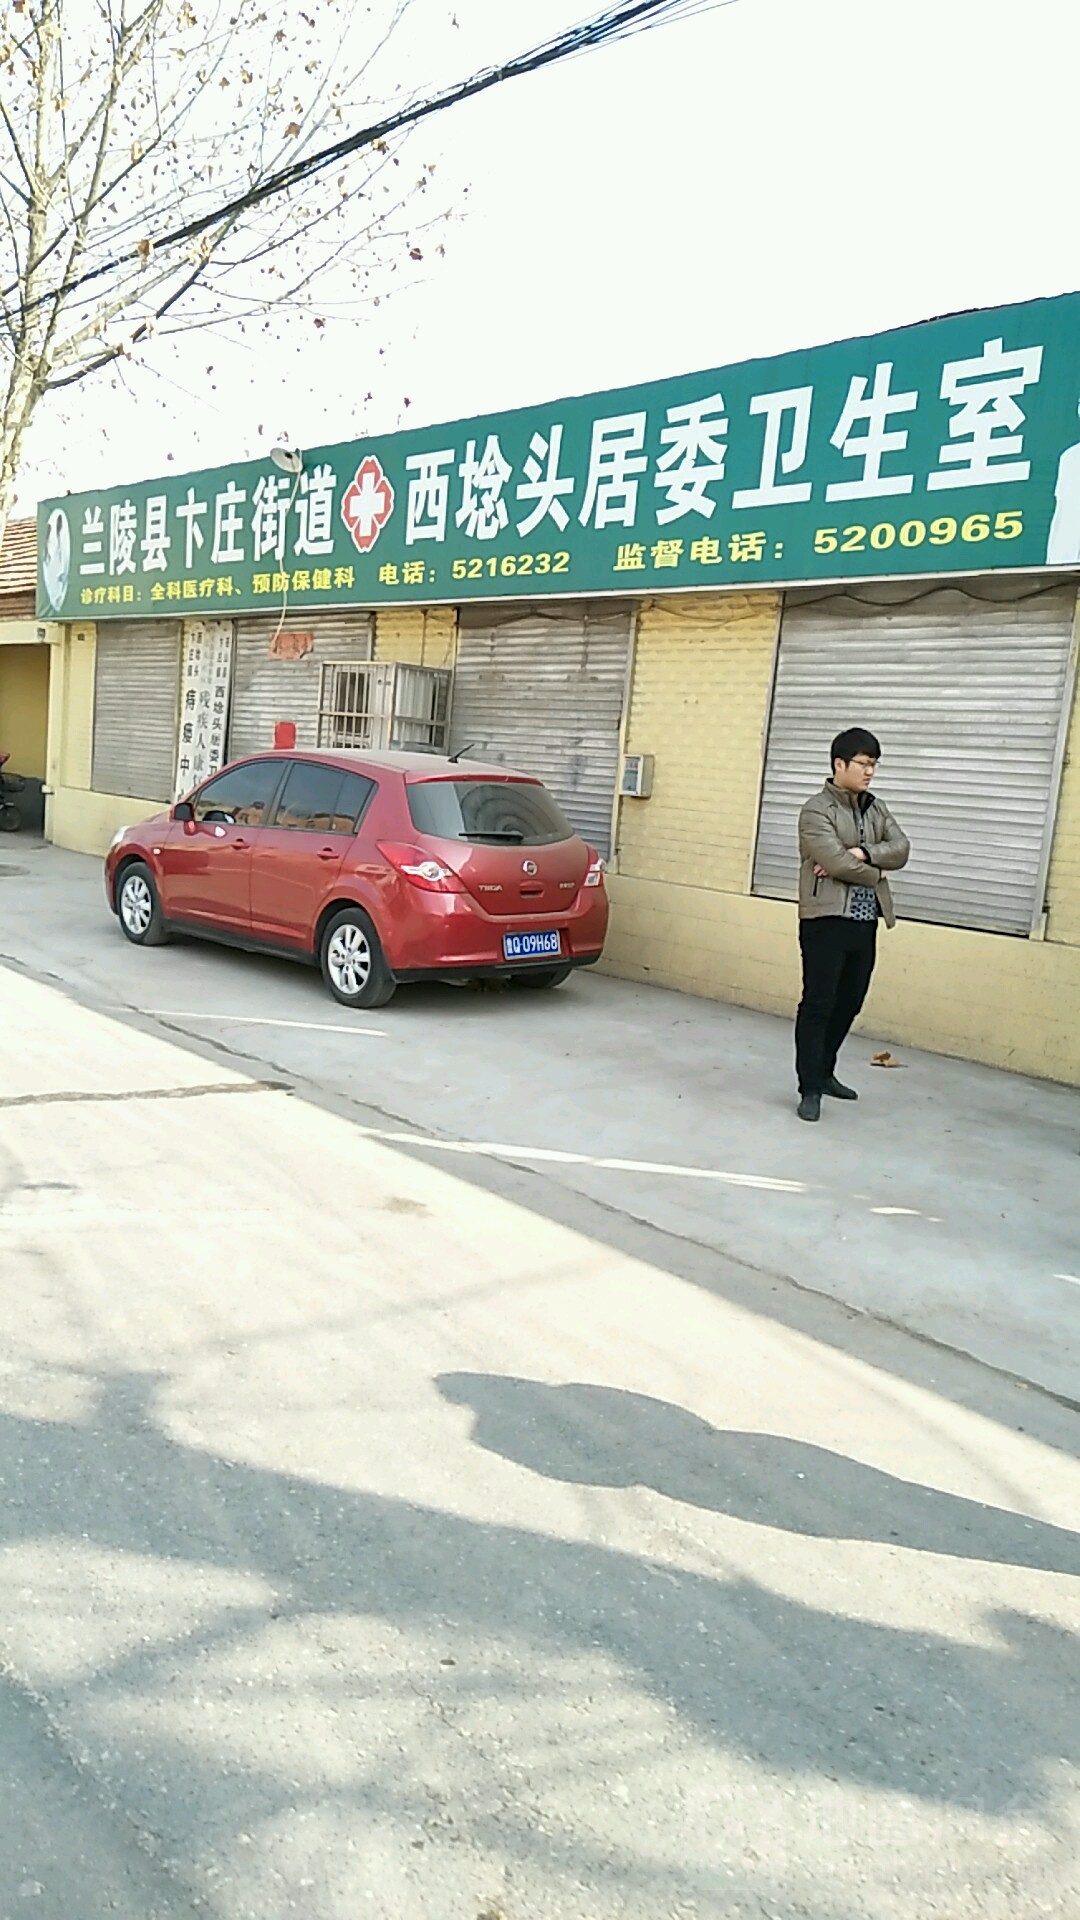 苍山县卞庄街道西埝头居委卫生室